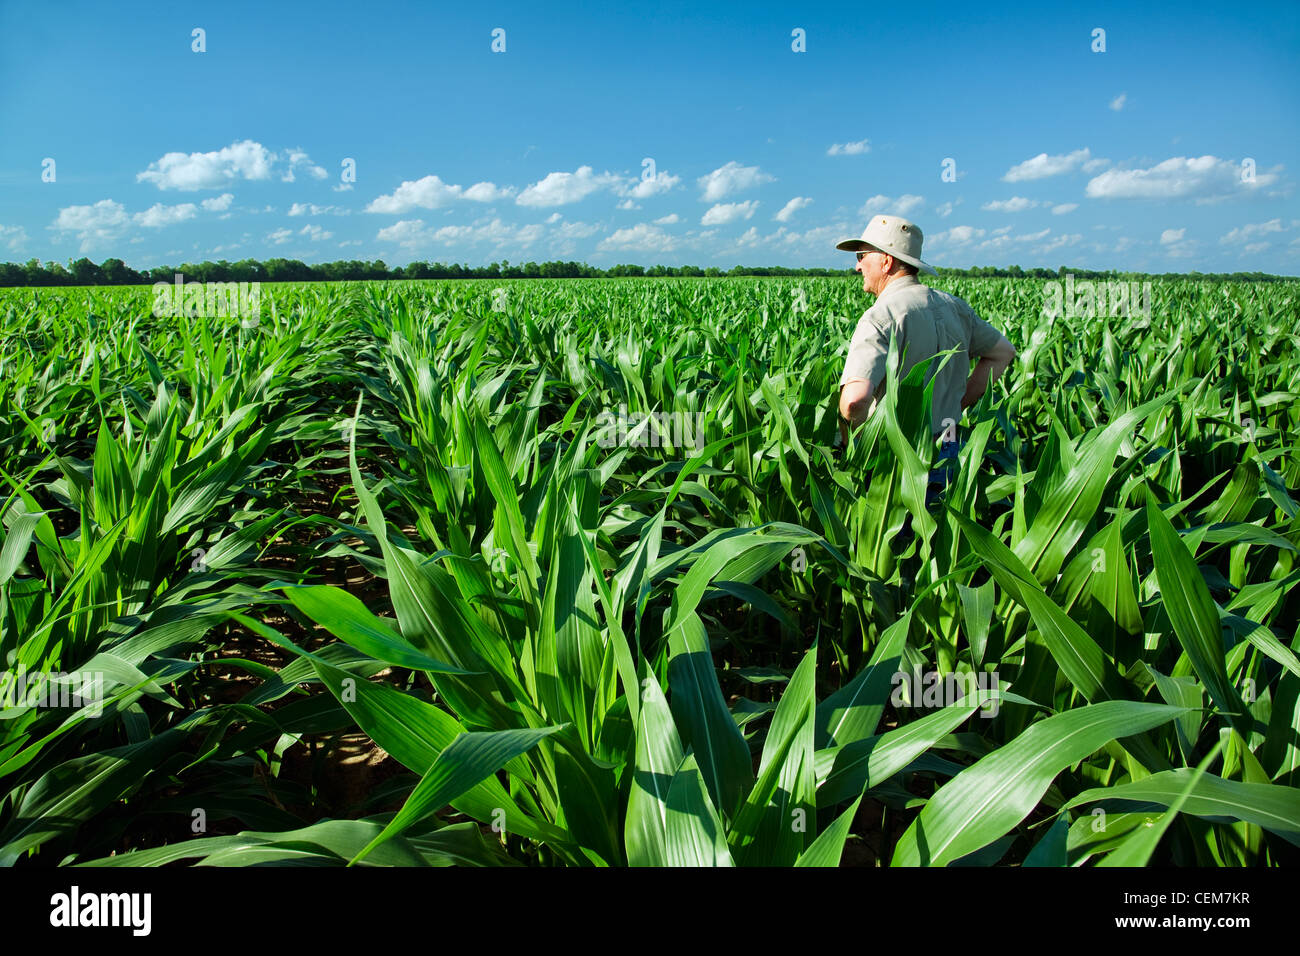 Agricoltura - un agricoltore (coltivatore) esamina il suo campo di crescita medio pre-stadio di fiocco di piante di granoturco / vicino a Inghilterra, Arkansas, Stati Uniti d'America. Foto Stock